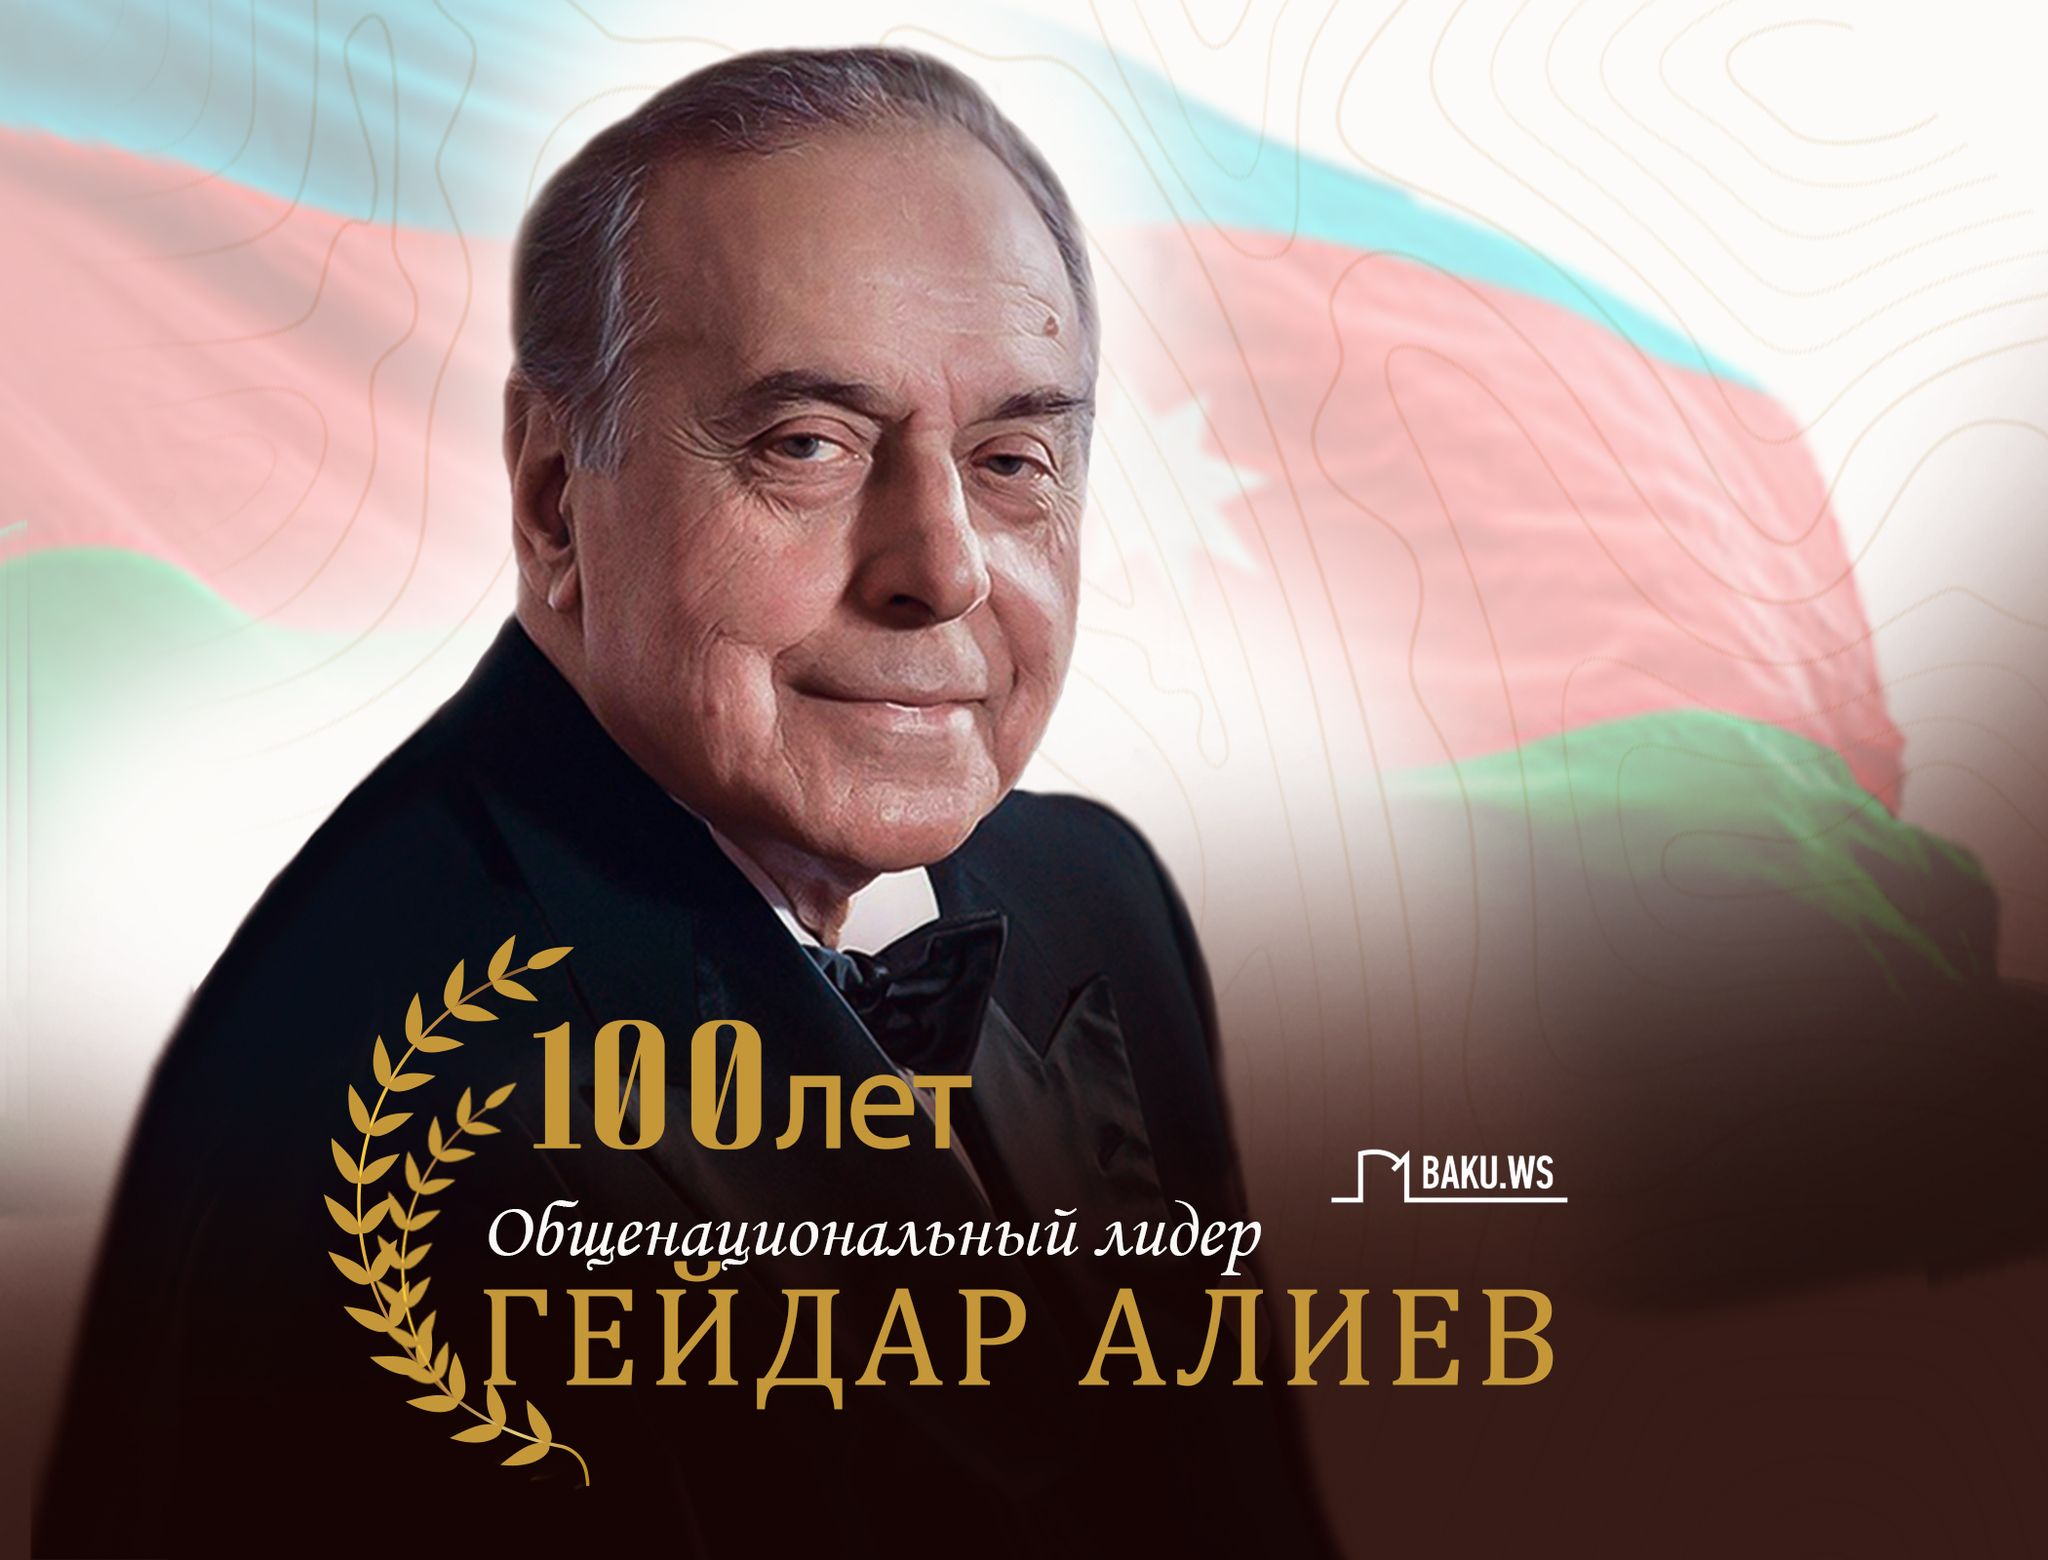 Прошло 100 лет со дня рождения общенационального лидера Гейдара Алиева